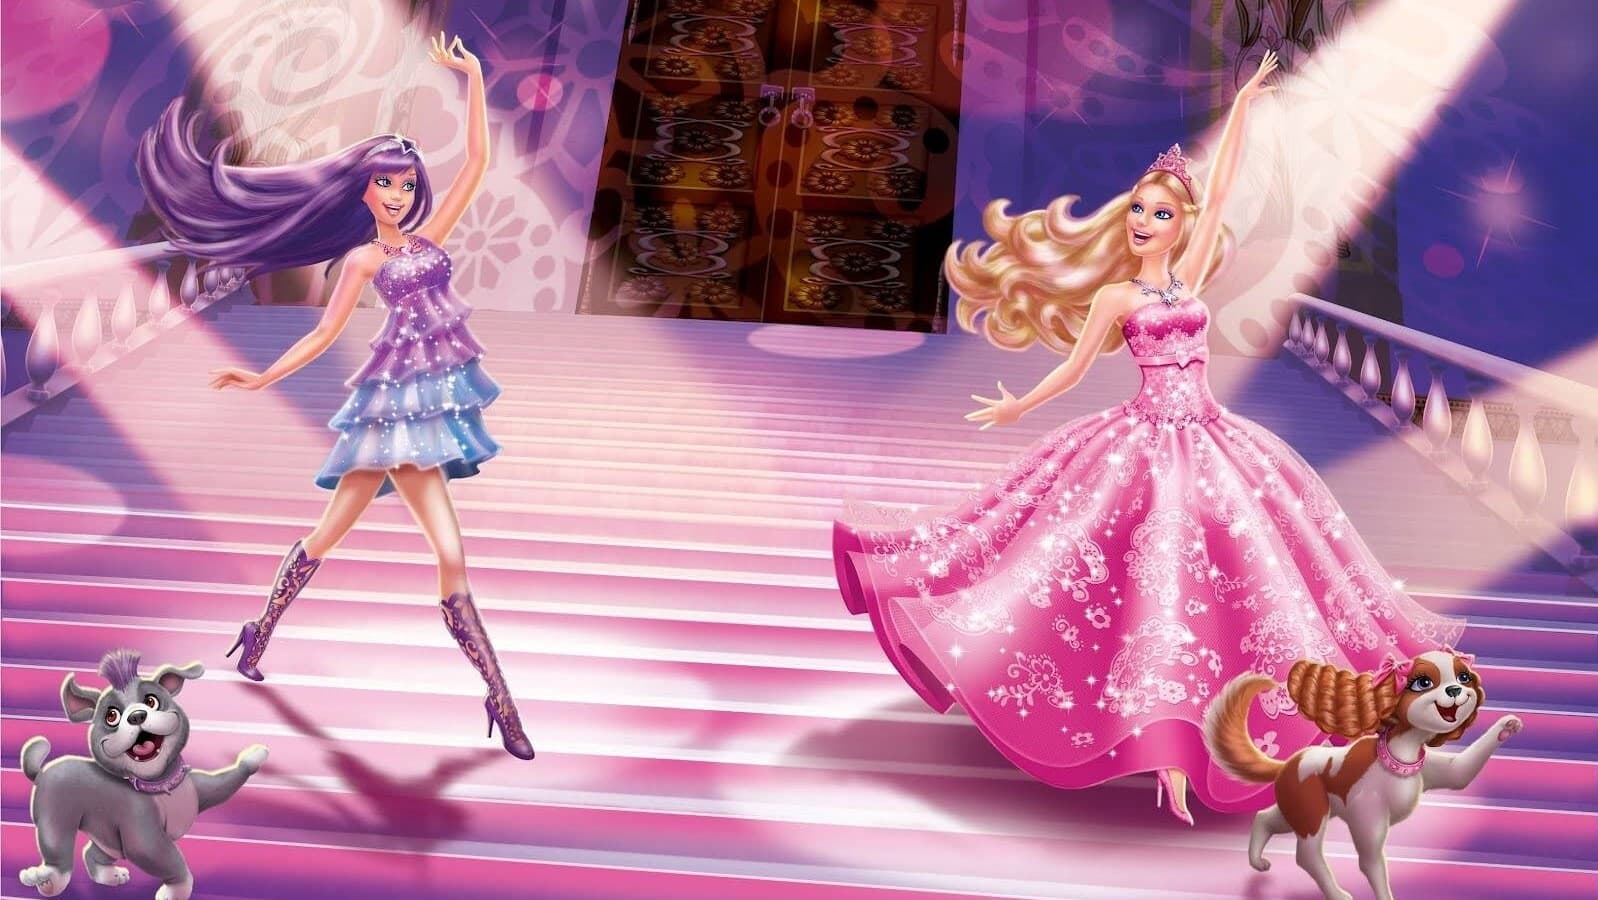 Barbie: Принцесата и звездата